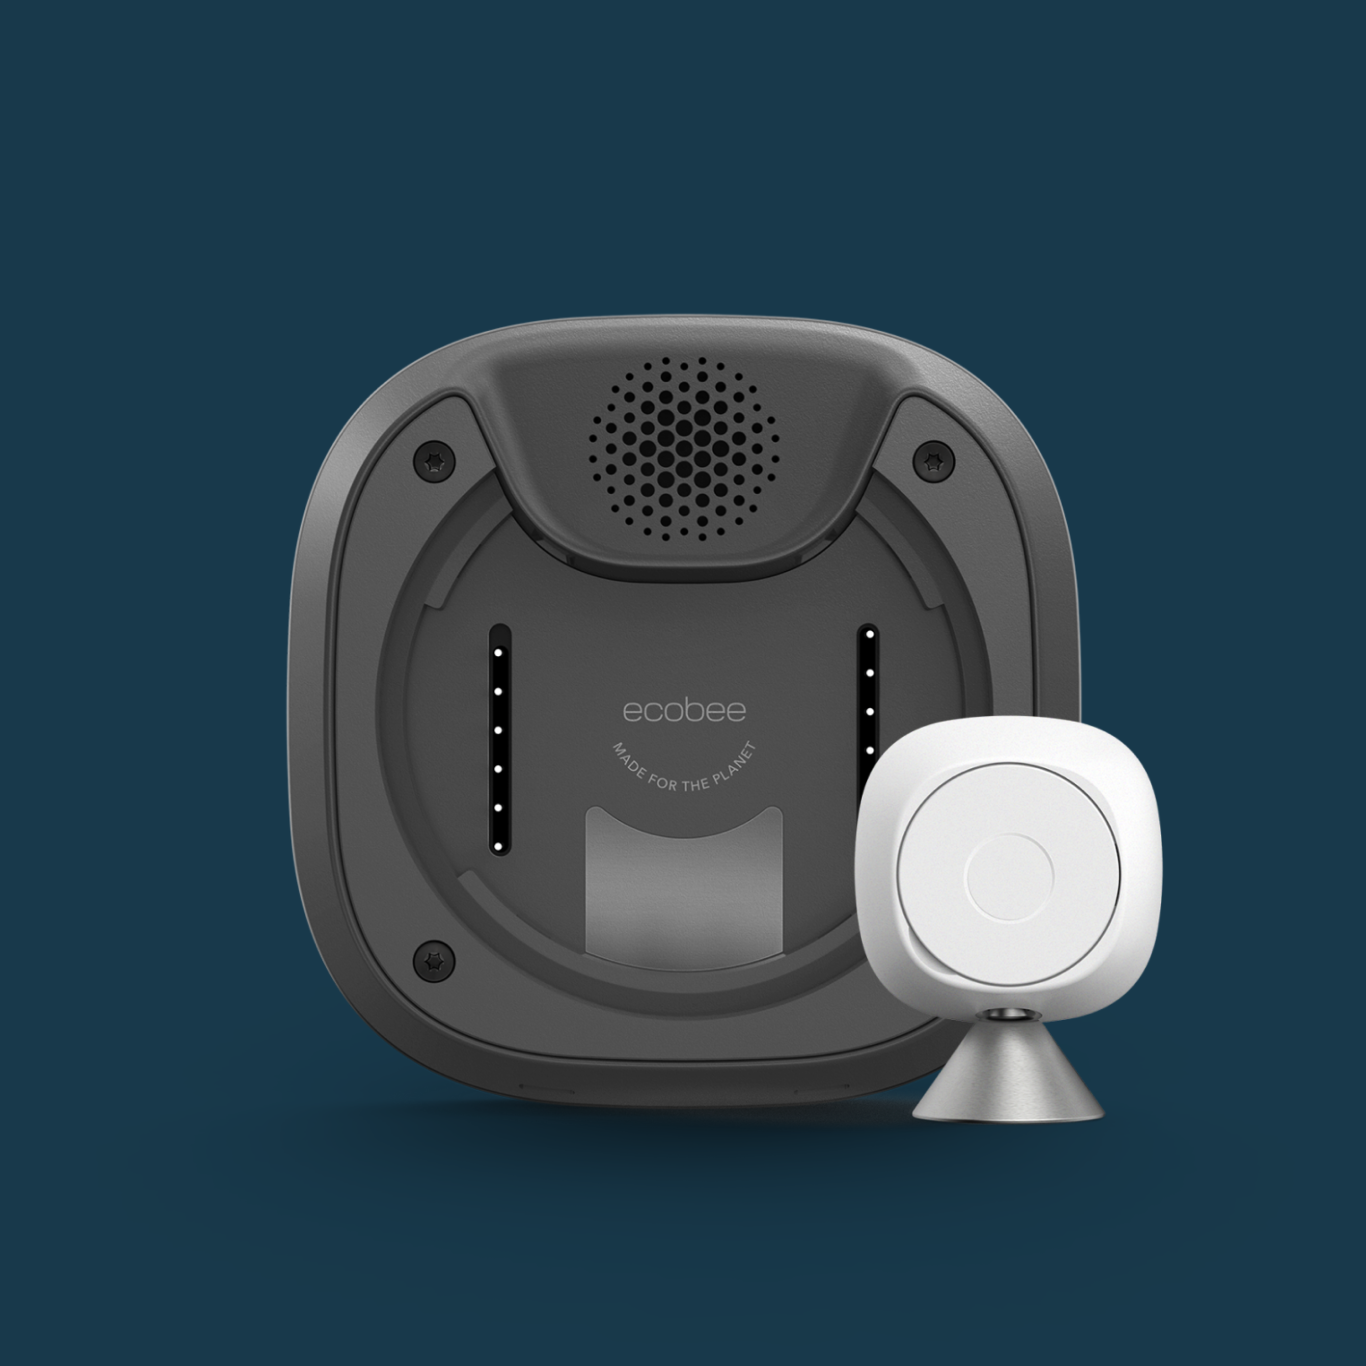 Termostato Inteligente Wifi Control Remoto Fan Coil Alexa